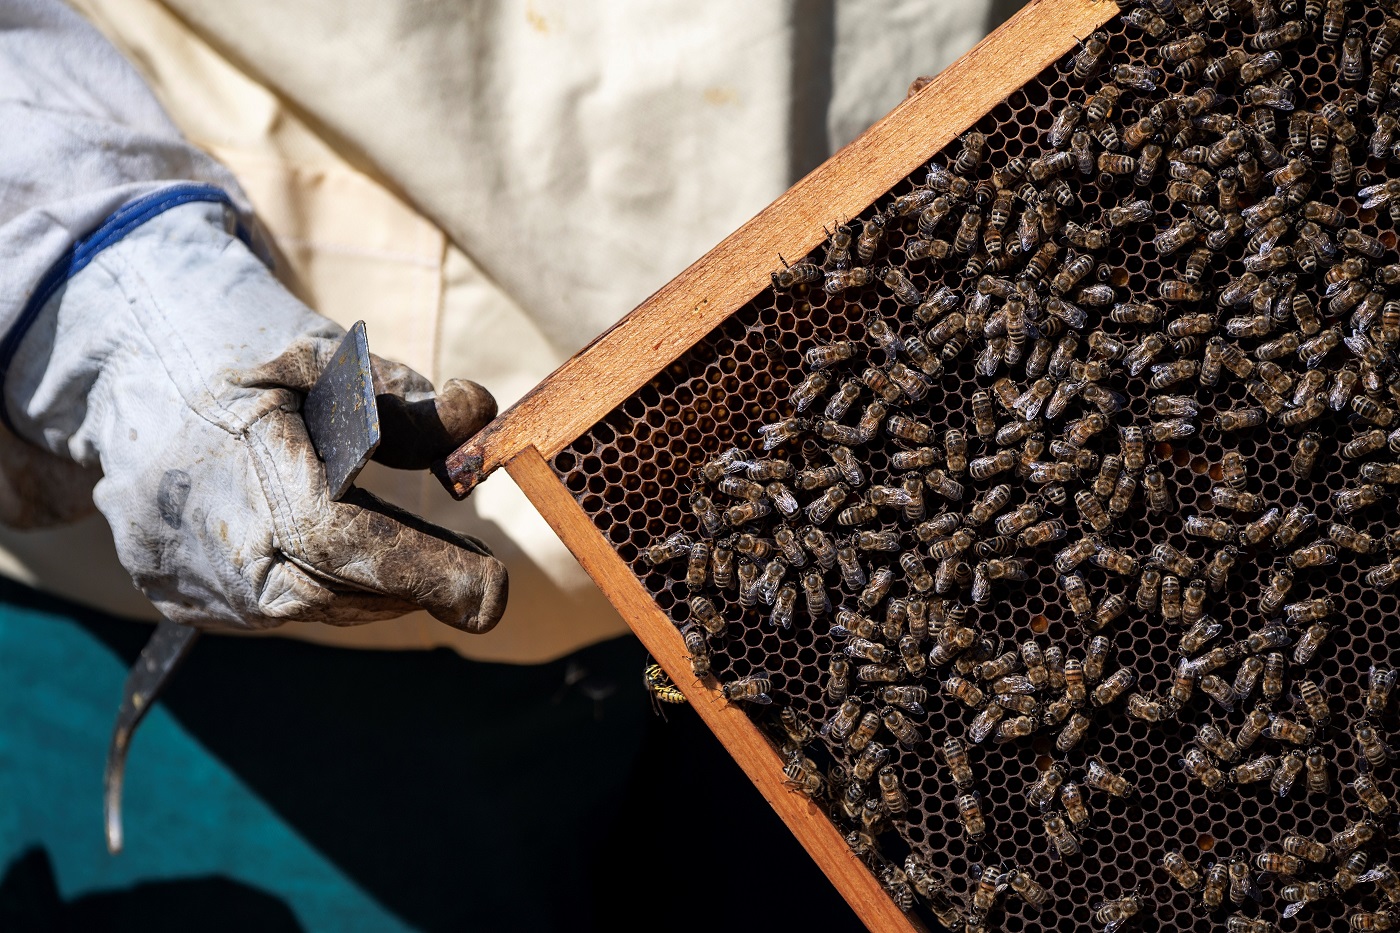  سنة سوداء لمربي النحل في أوروبا  162-022604-bees-honey-2